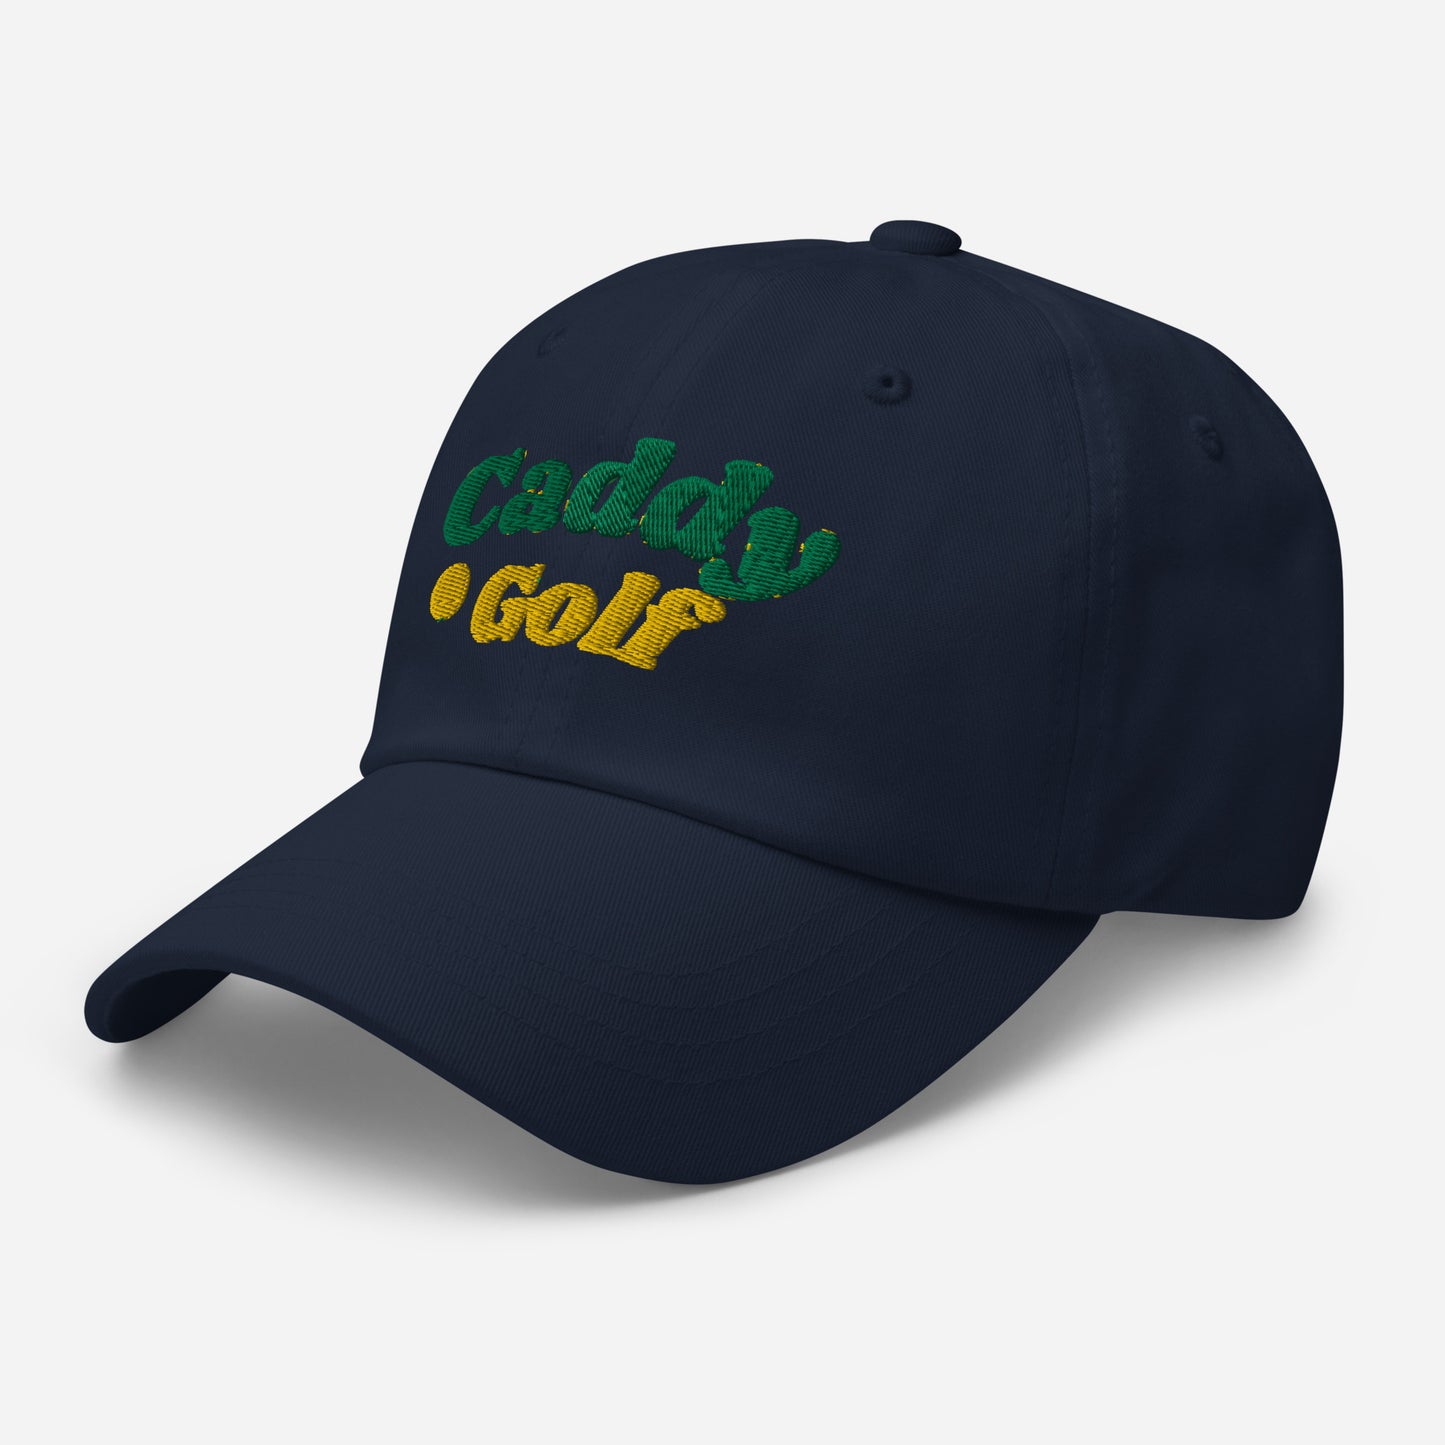 Caddy Golf Retro Logo Navy Baseball Hat-Caddy Golf